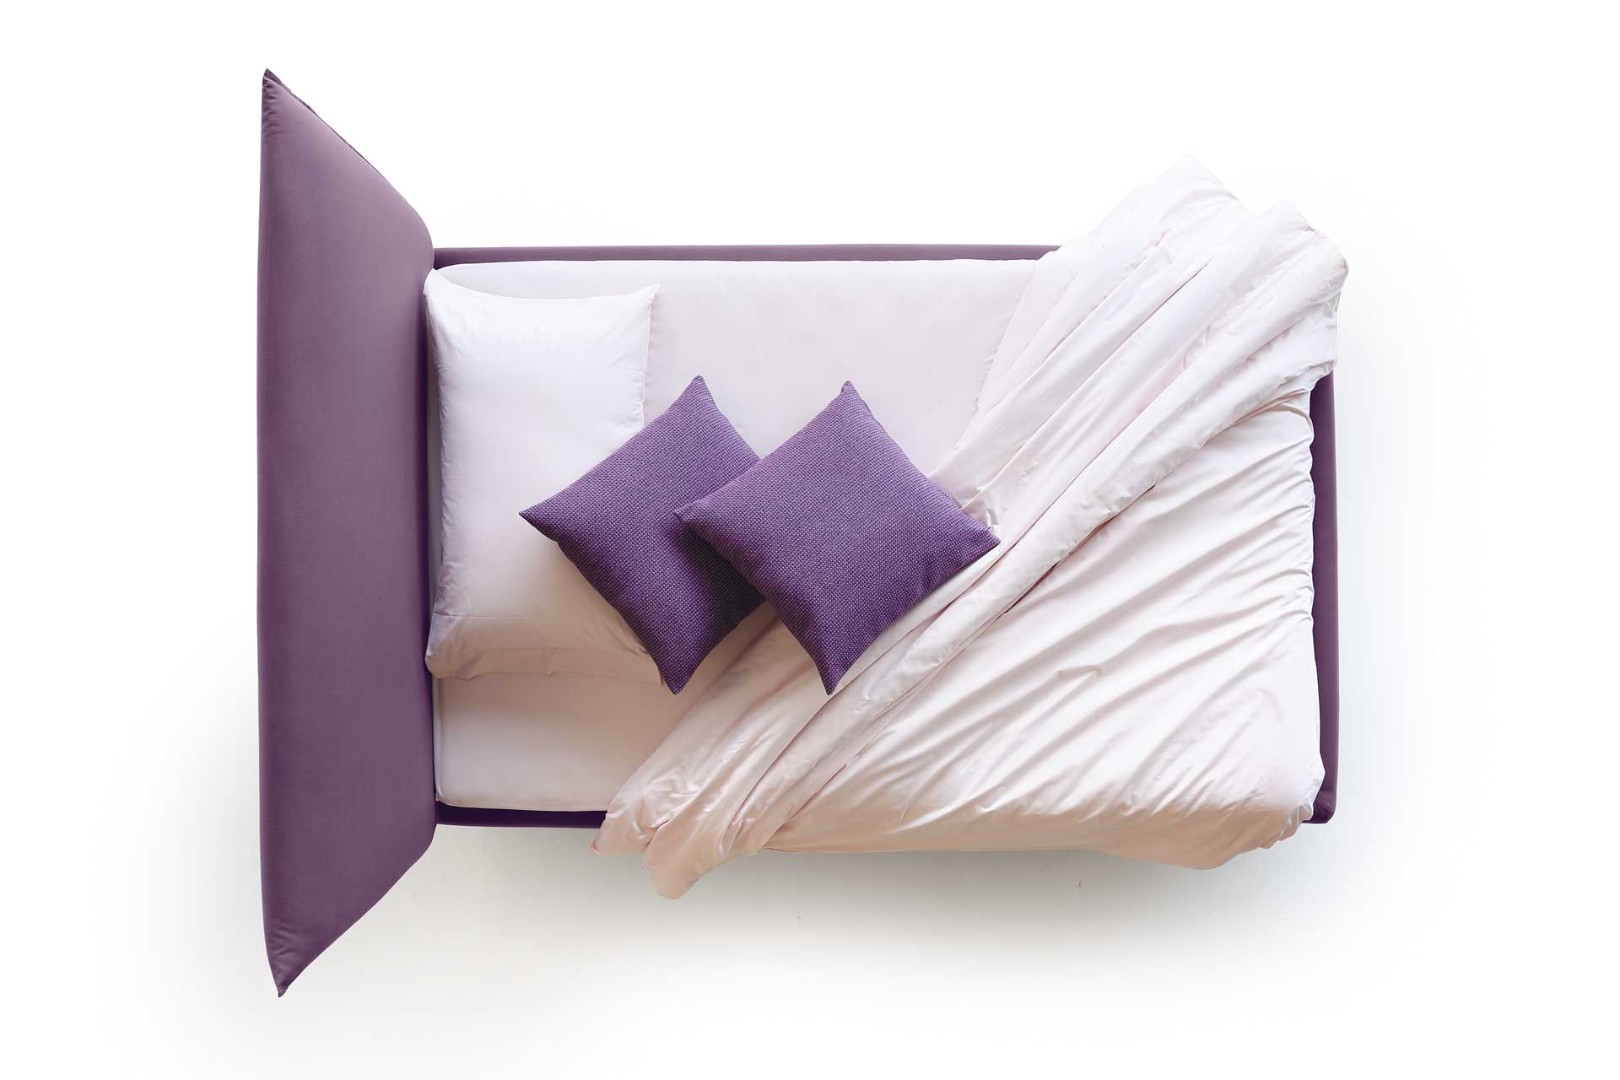 Кровать Hug 04 Soft — ₽, купить у официального дилера Nicolettihome